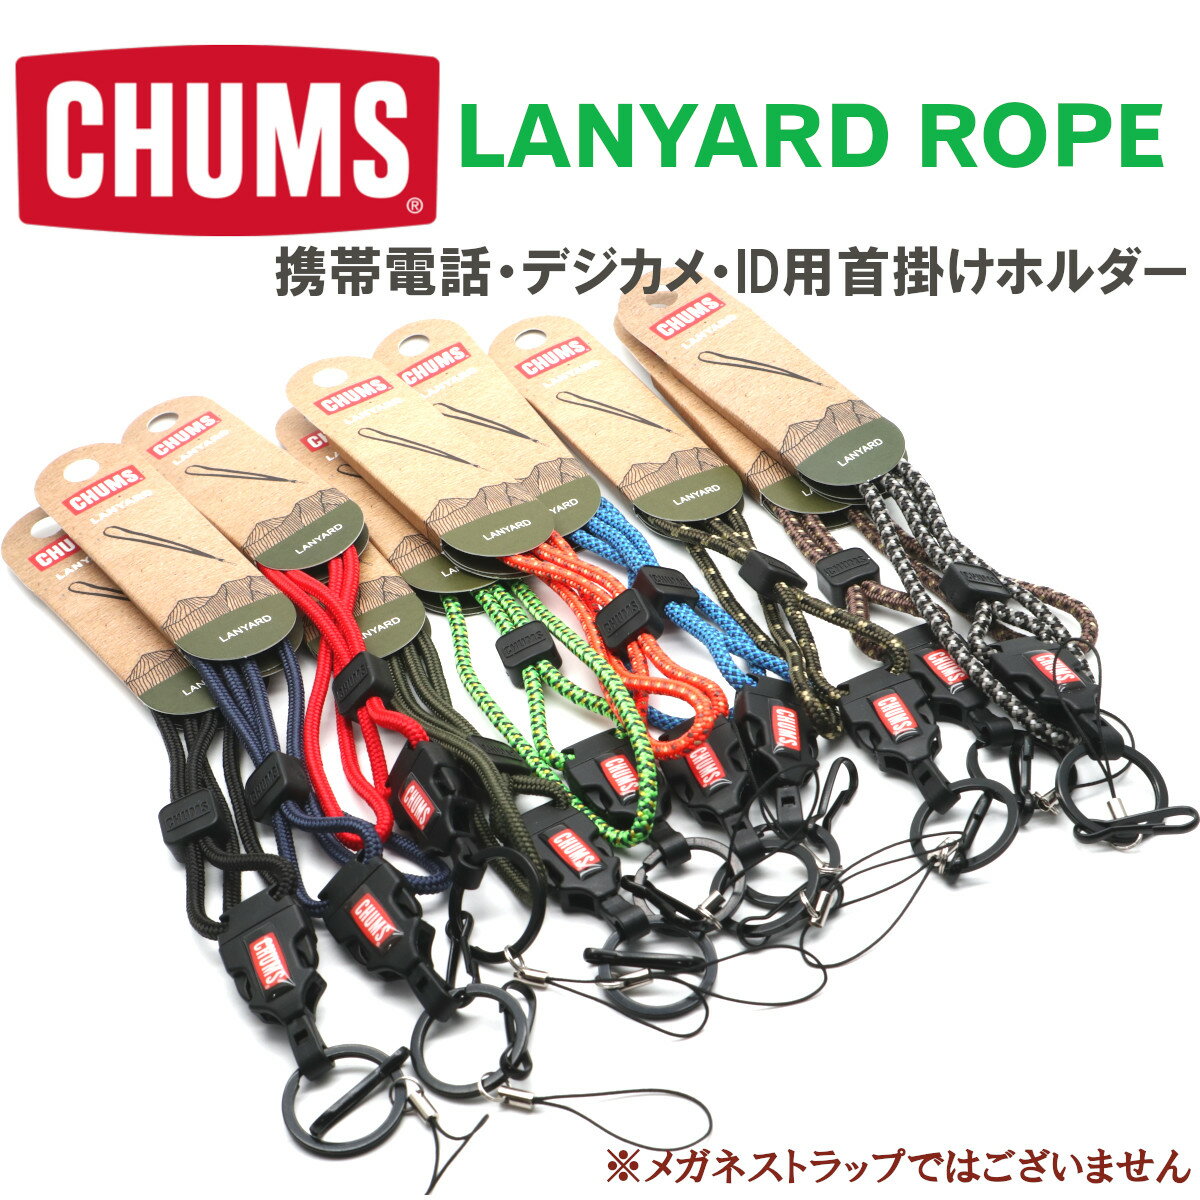 【CHUMS】チャムス ネックストラップ LAN...の商品画像